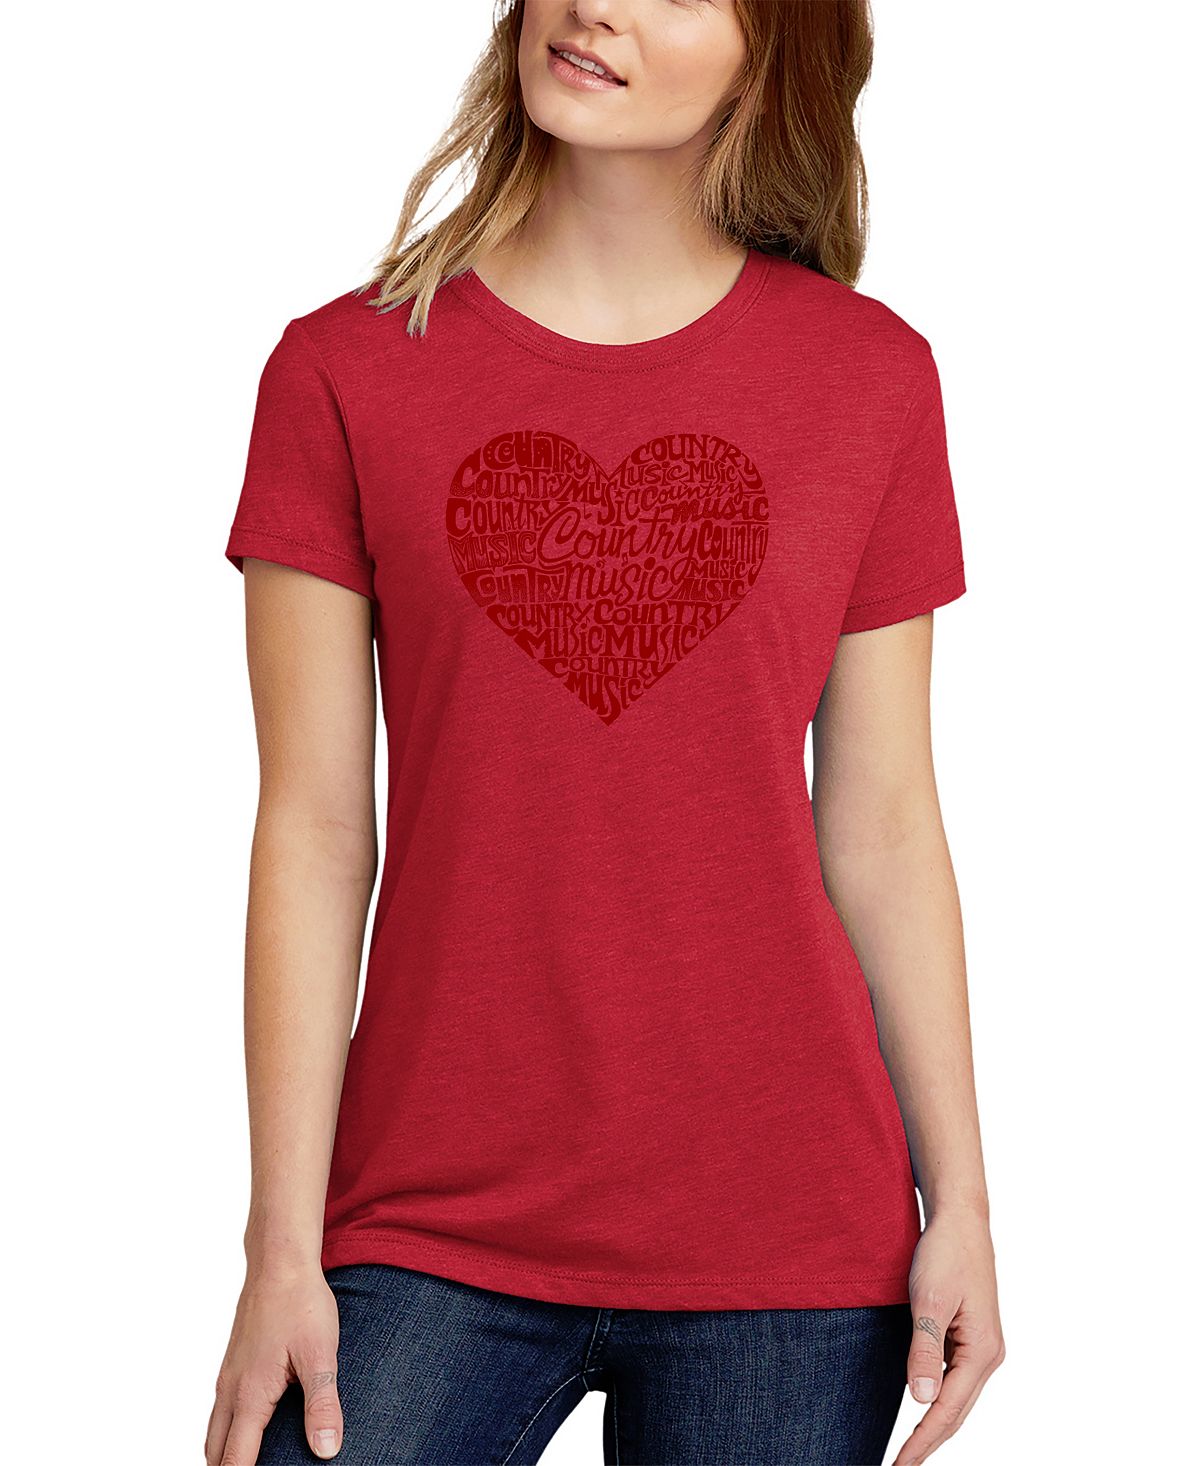 Женская футболка premium blend word art country music с сердцем LA Pop Art, красный